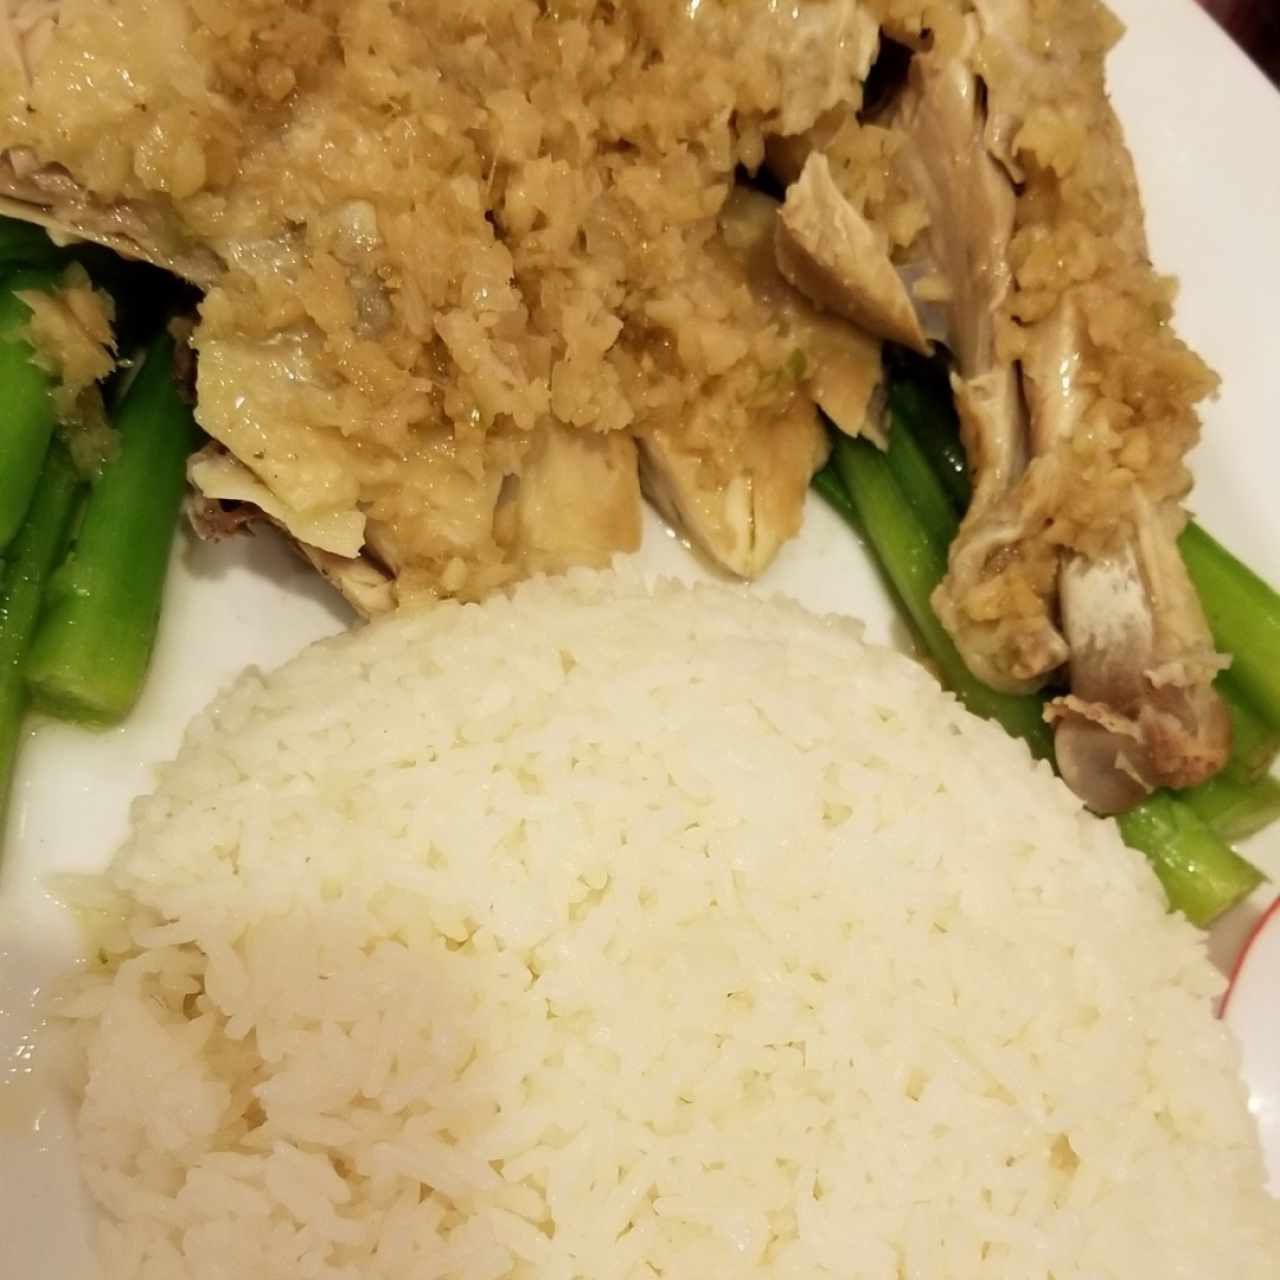 gallina con jengibre, hoja de mostaza  y arroz de jazmin